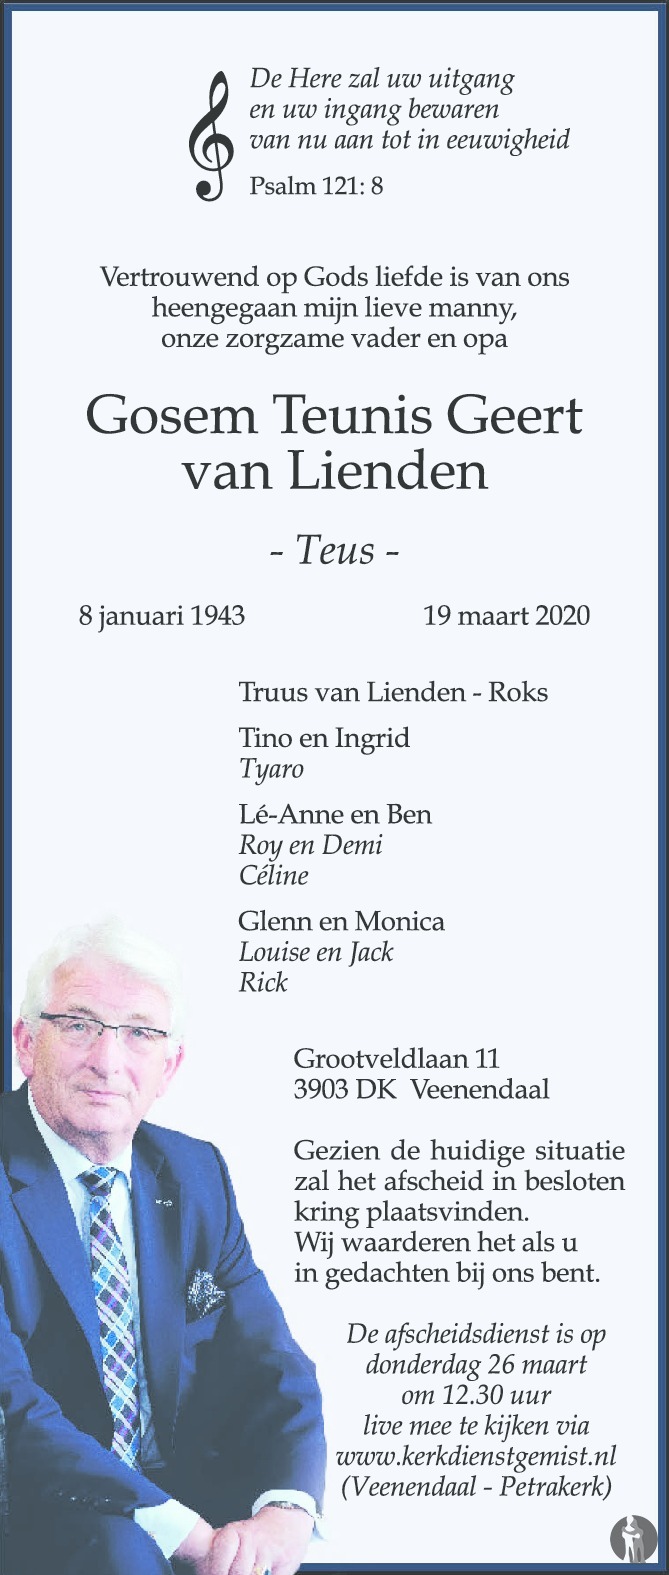 Gosem Teunis Geert (Teus) van Lienden 19-03-2020 ...